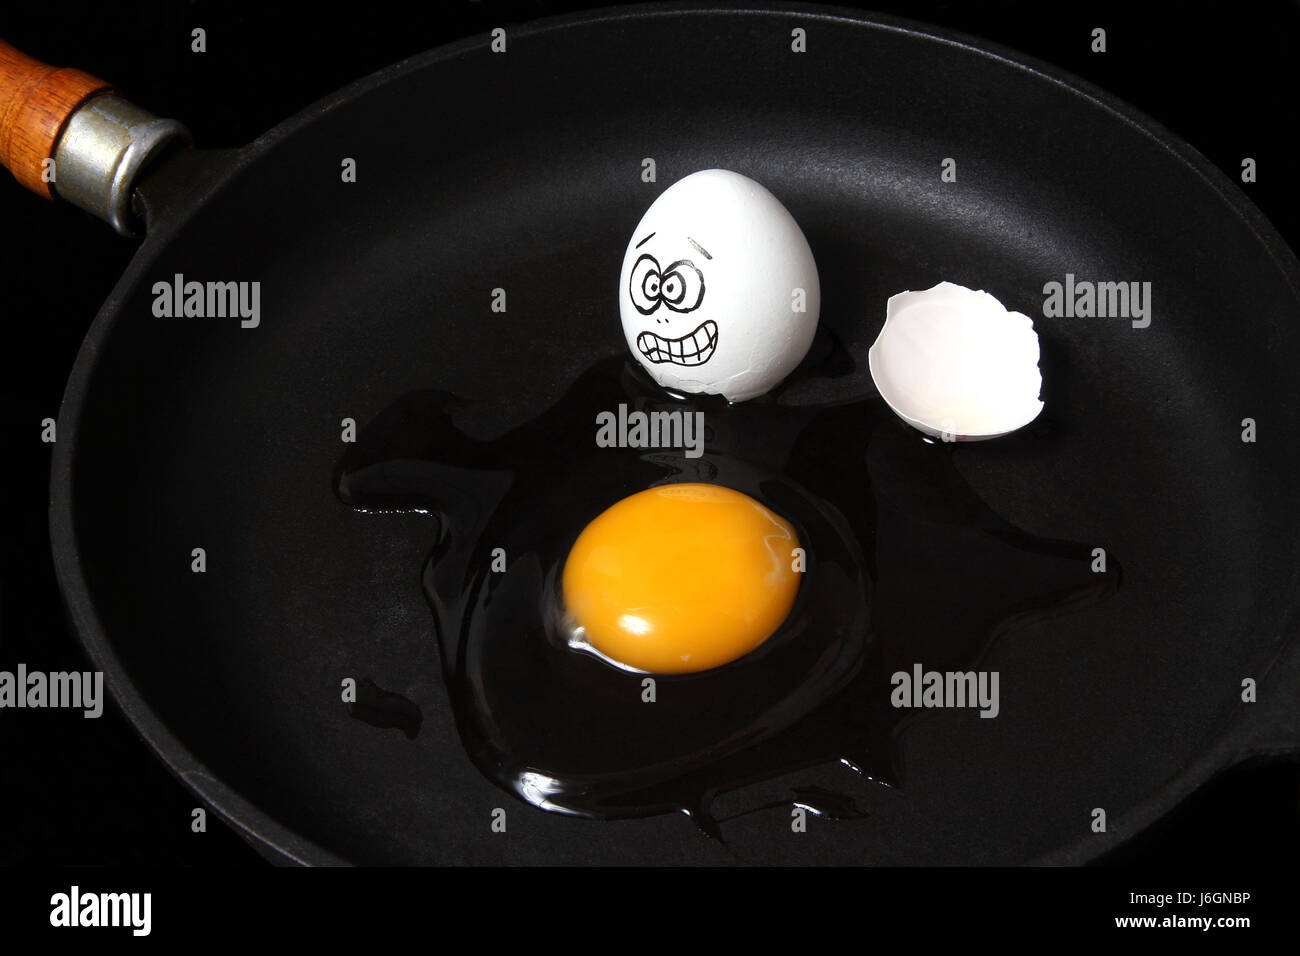 Gesicht Angst Eigelb Eierschale Eiern Spiegelei Pfanne Bratpfanne Hingabe  gehen weg fahren Stockfotografie - Alamy